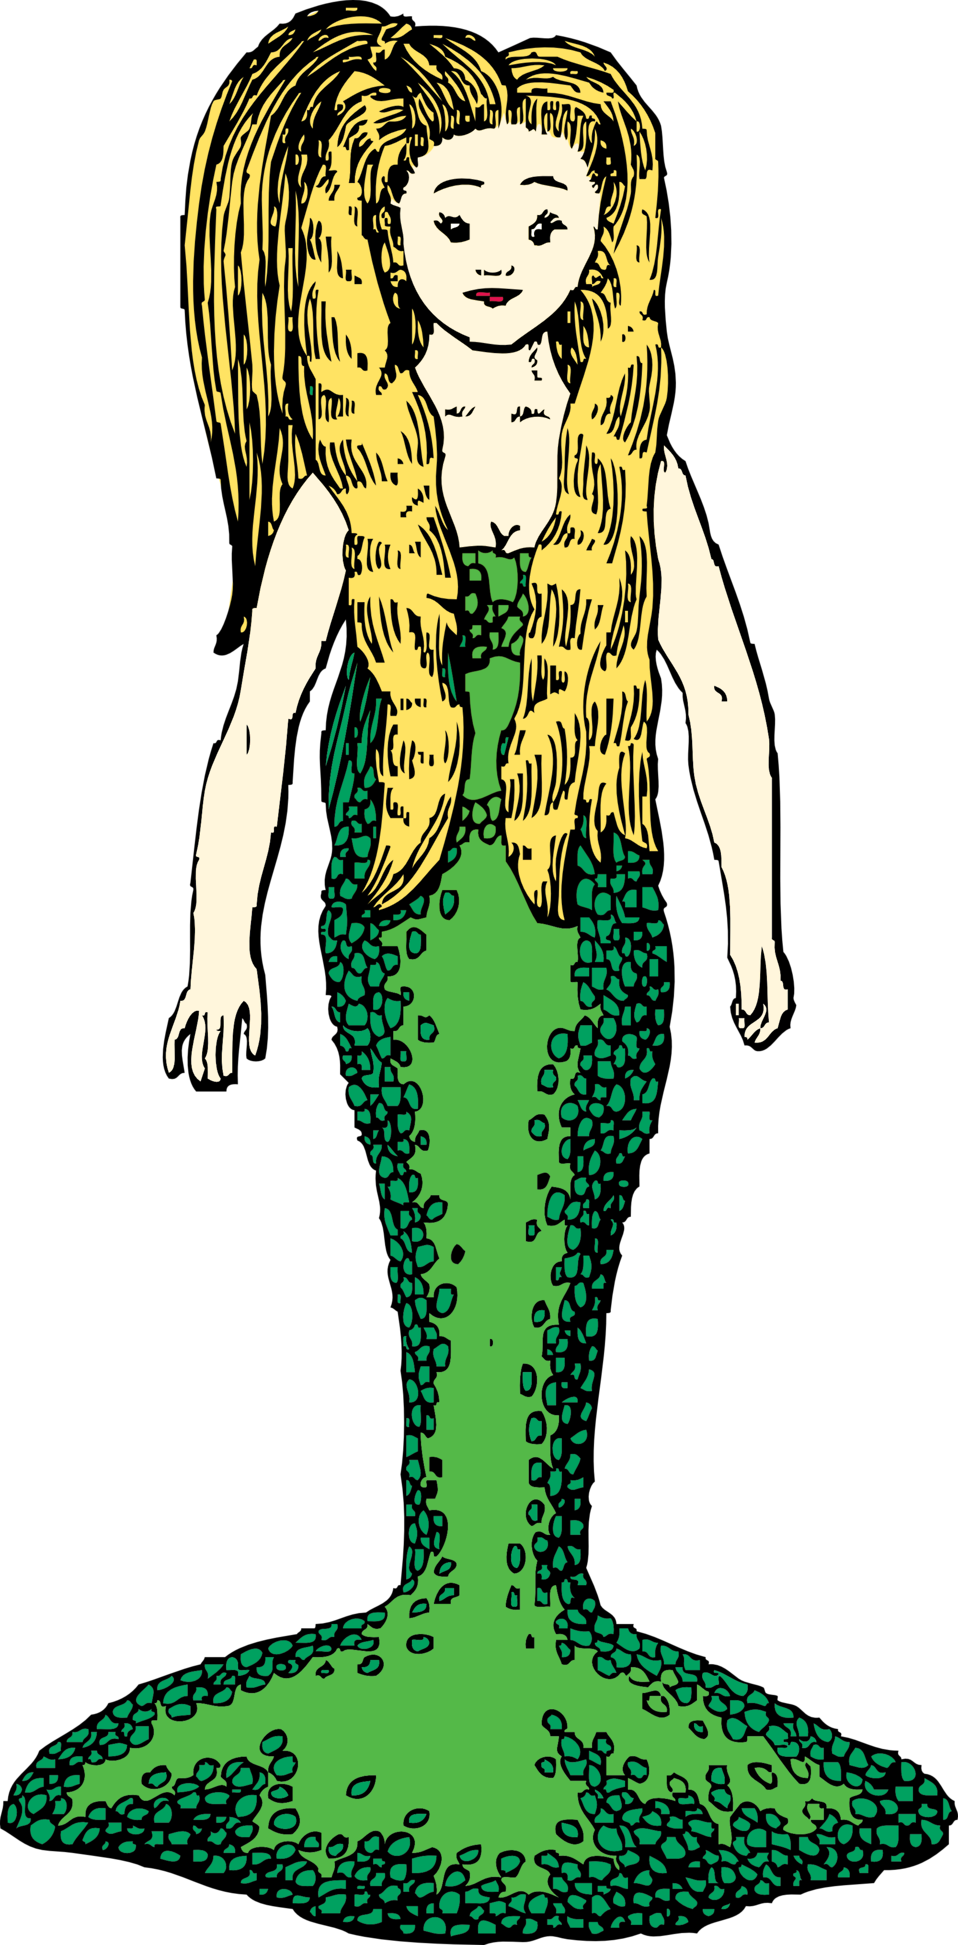 mermaid clipart design